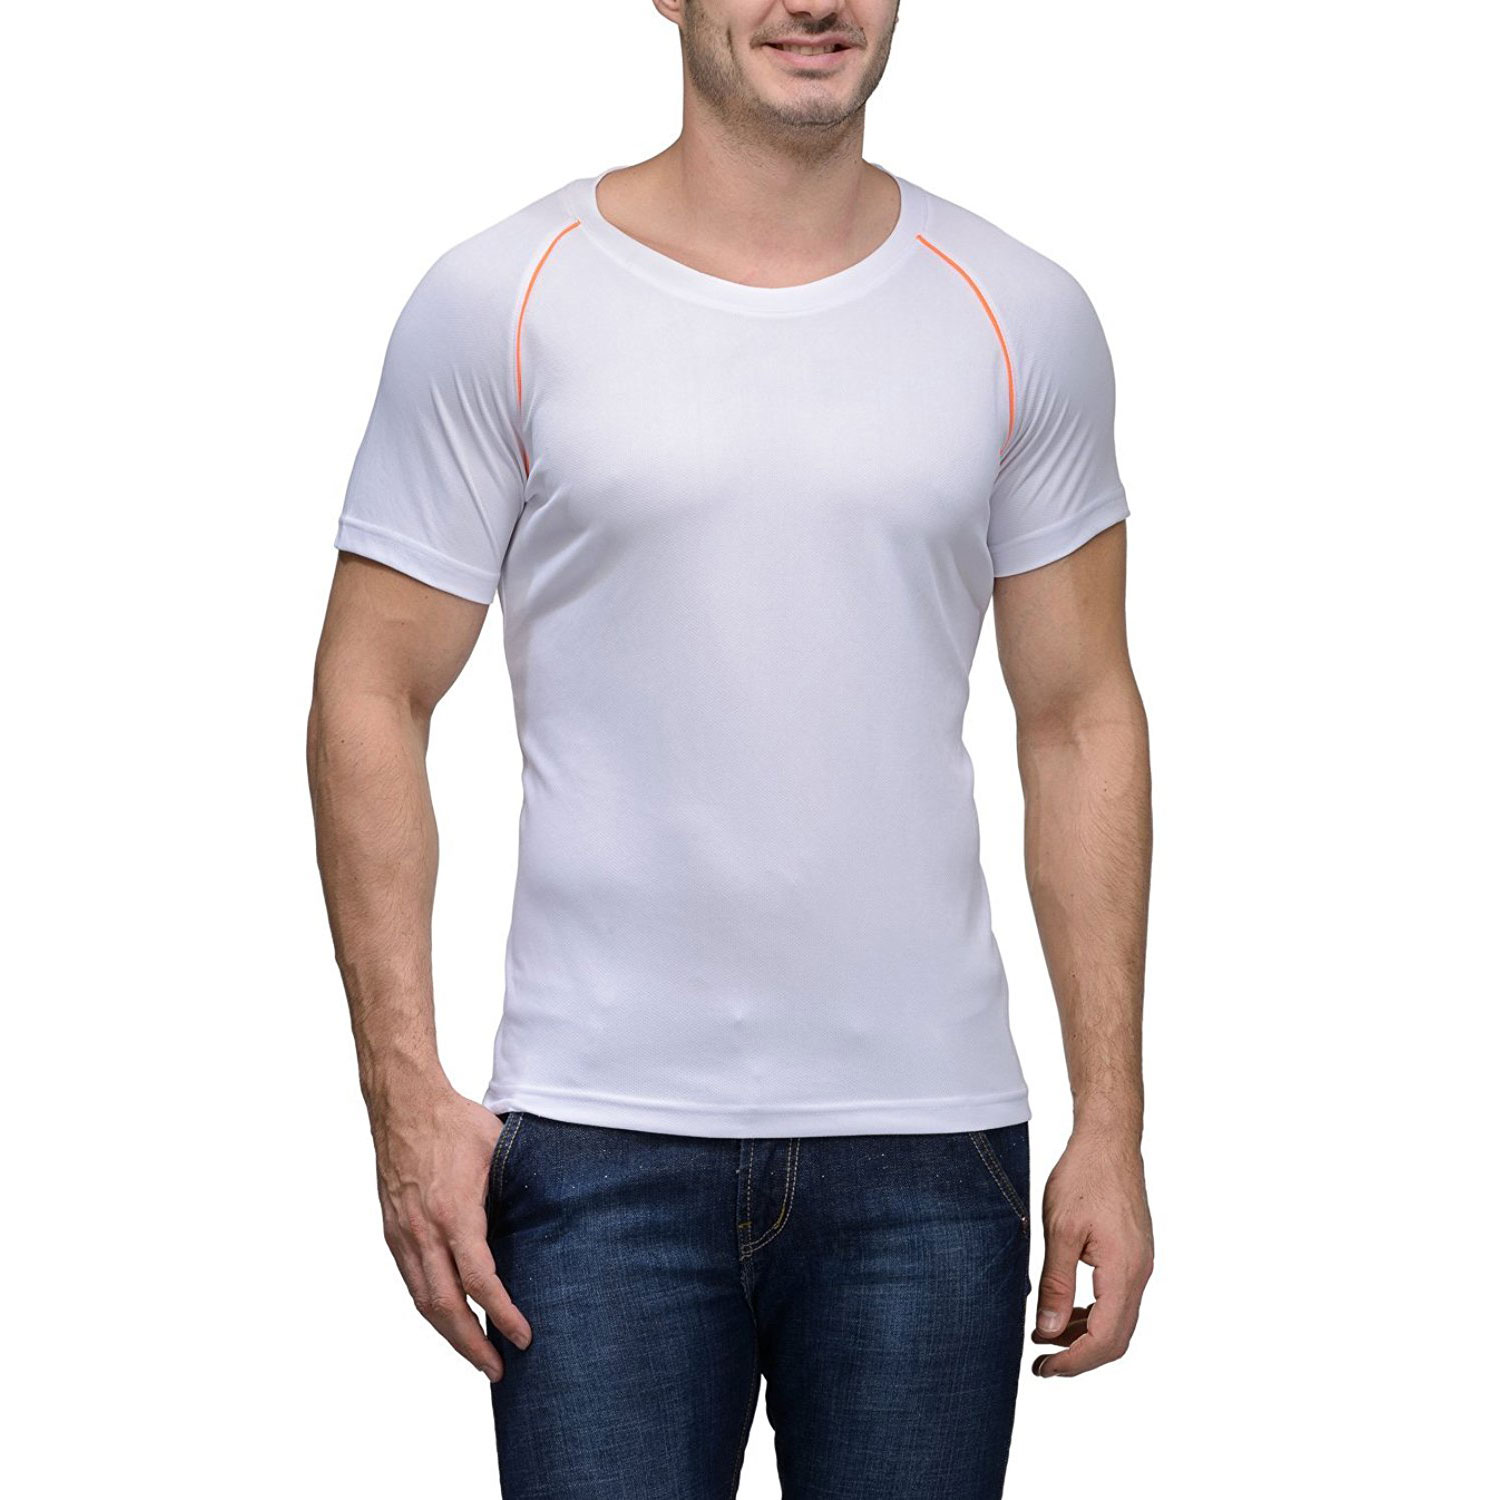   Scott Men's Jersey Round Neck Sports Dryfit T-shirt - White